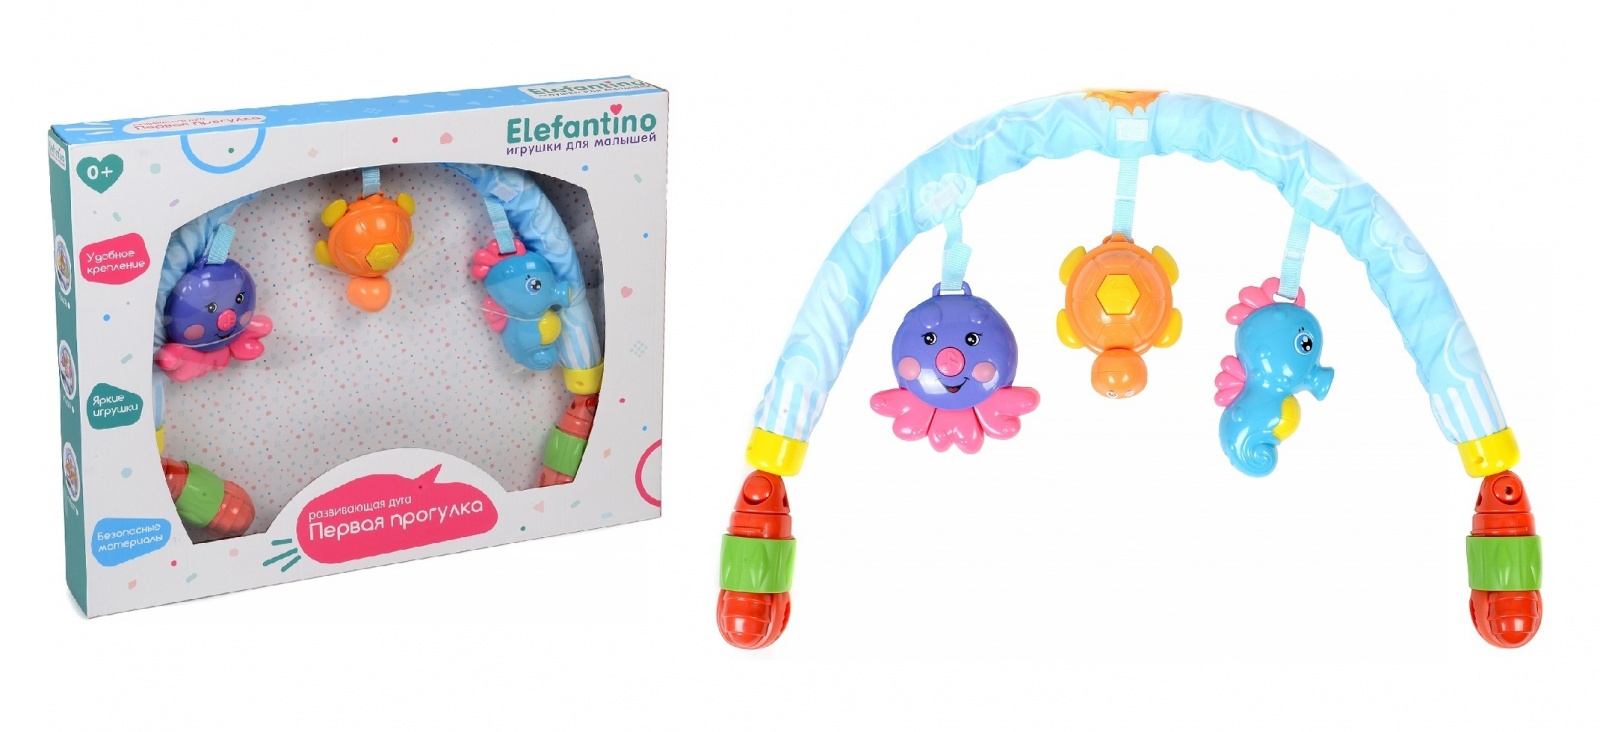 фото Elefantino игрушки-погремушки: 3 игрушки с музыкой, it106276